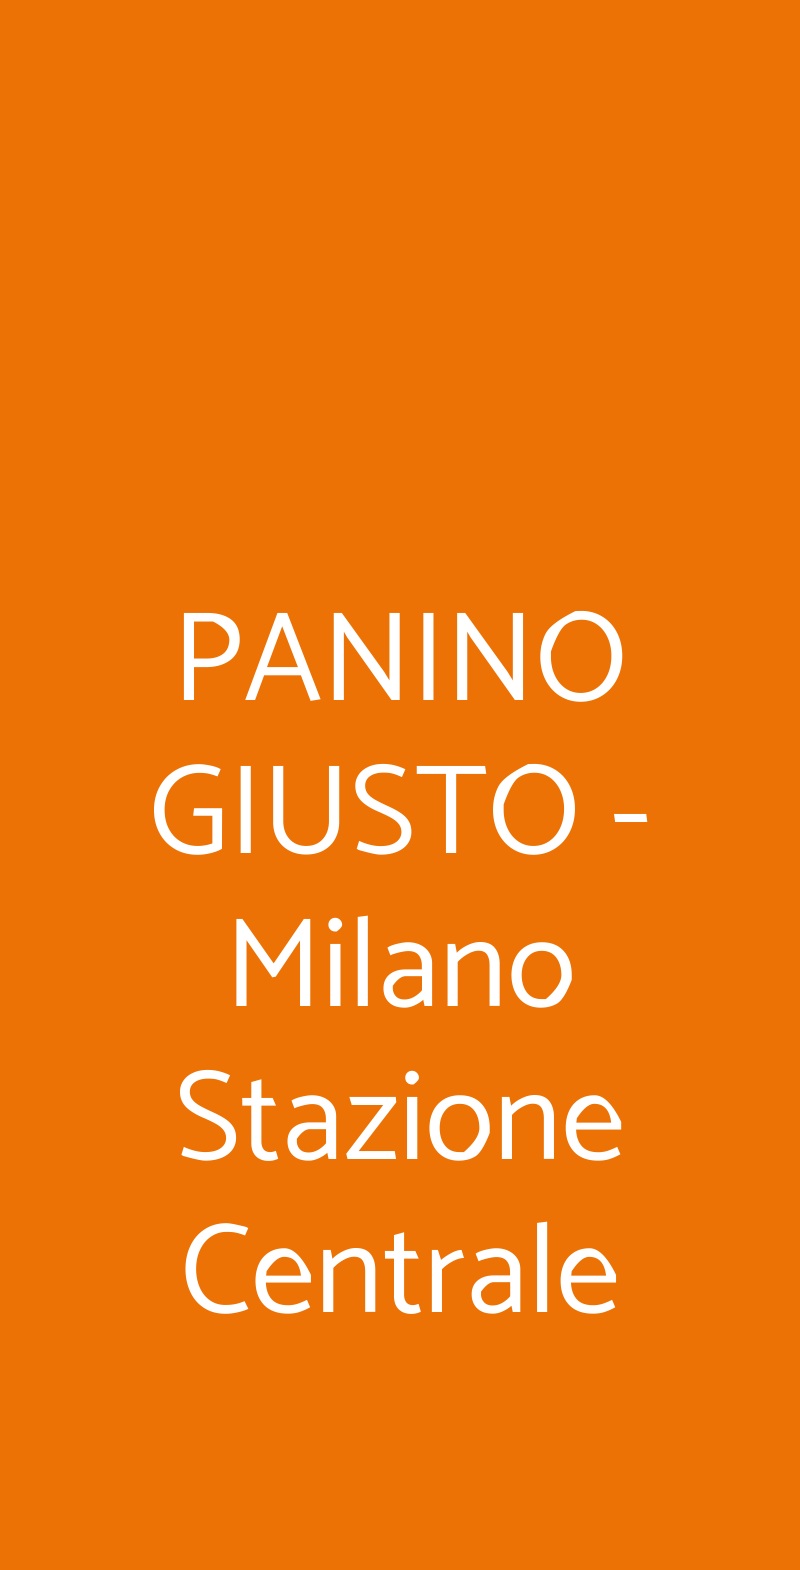 PANINO GIUSTO - Milano Stazione Centrale Milano menù 1 pagina